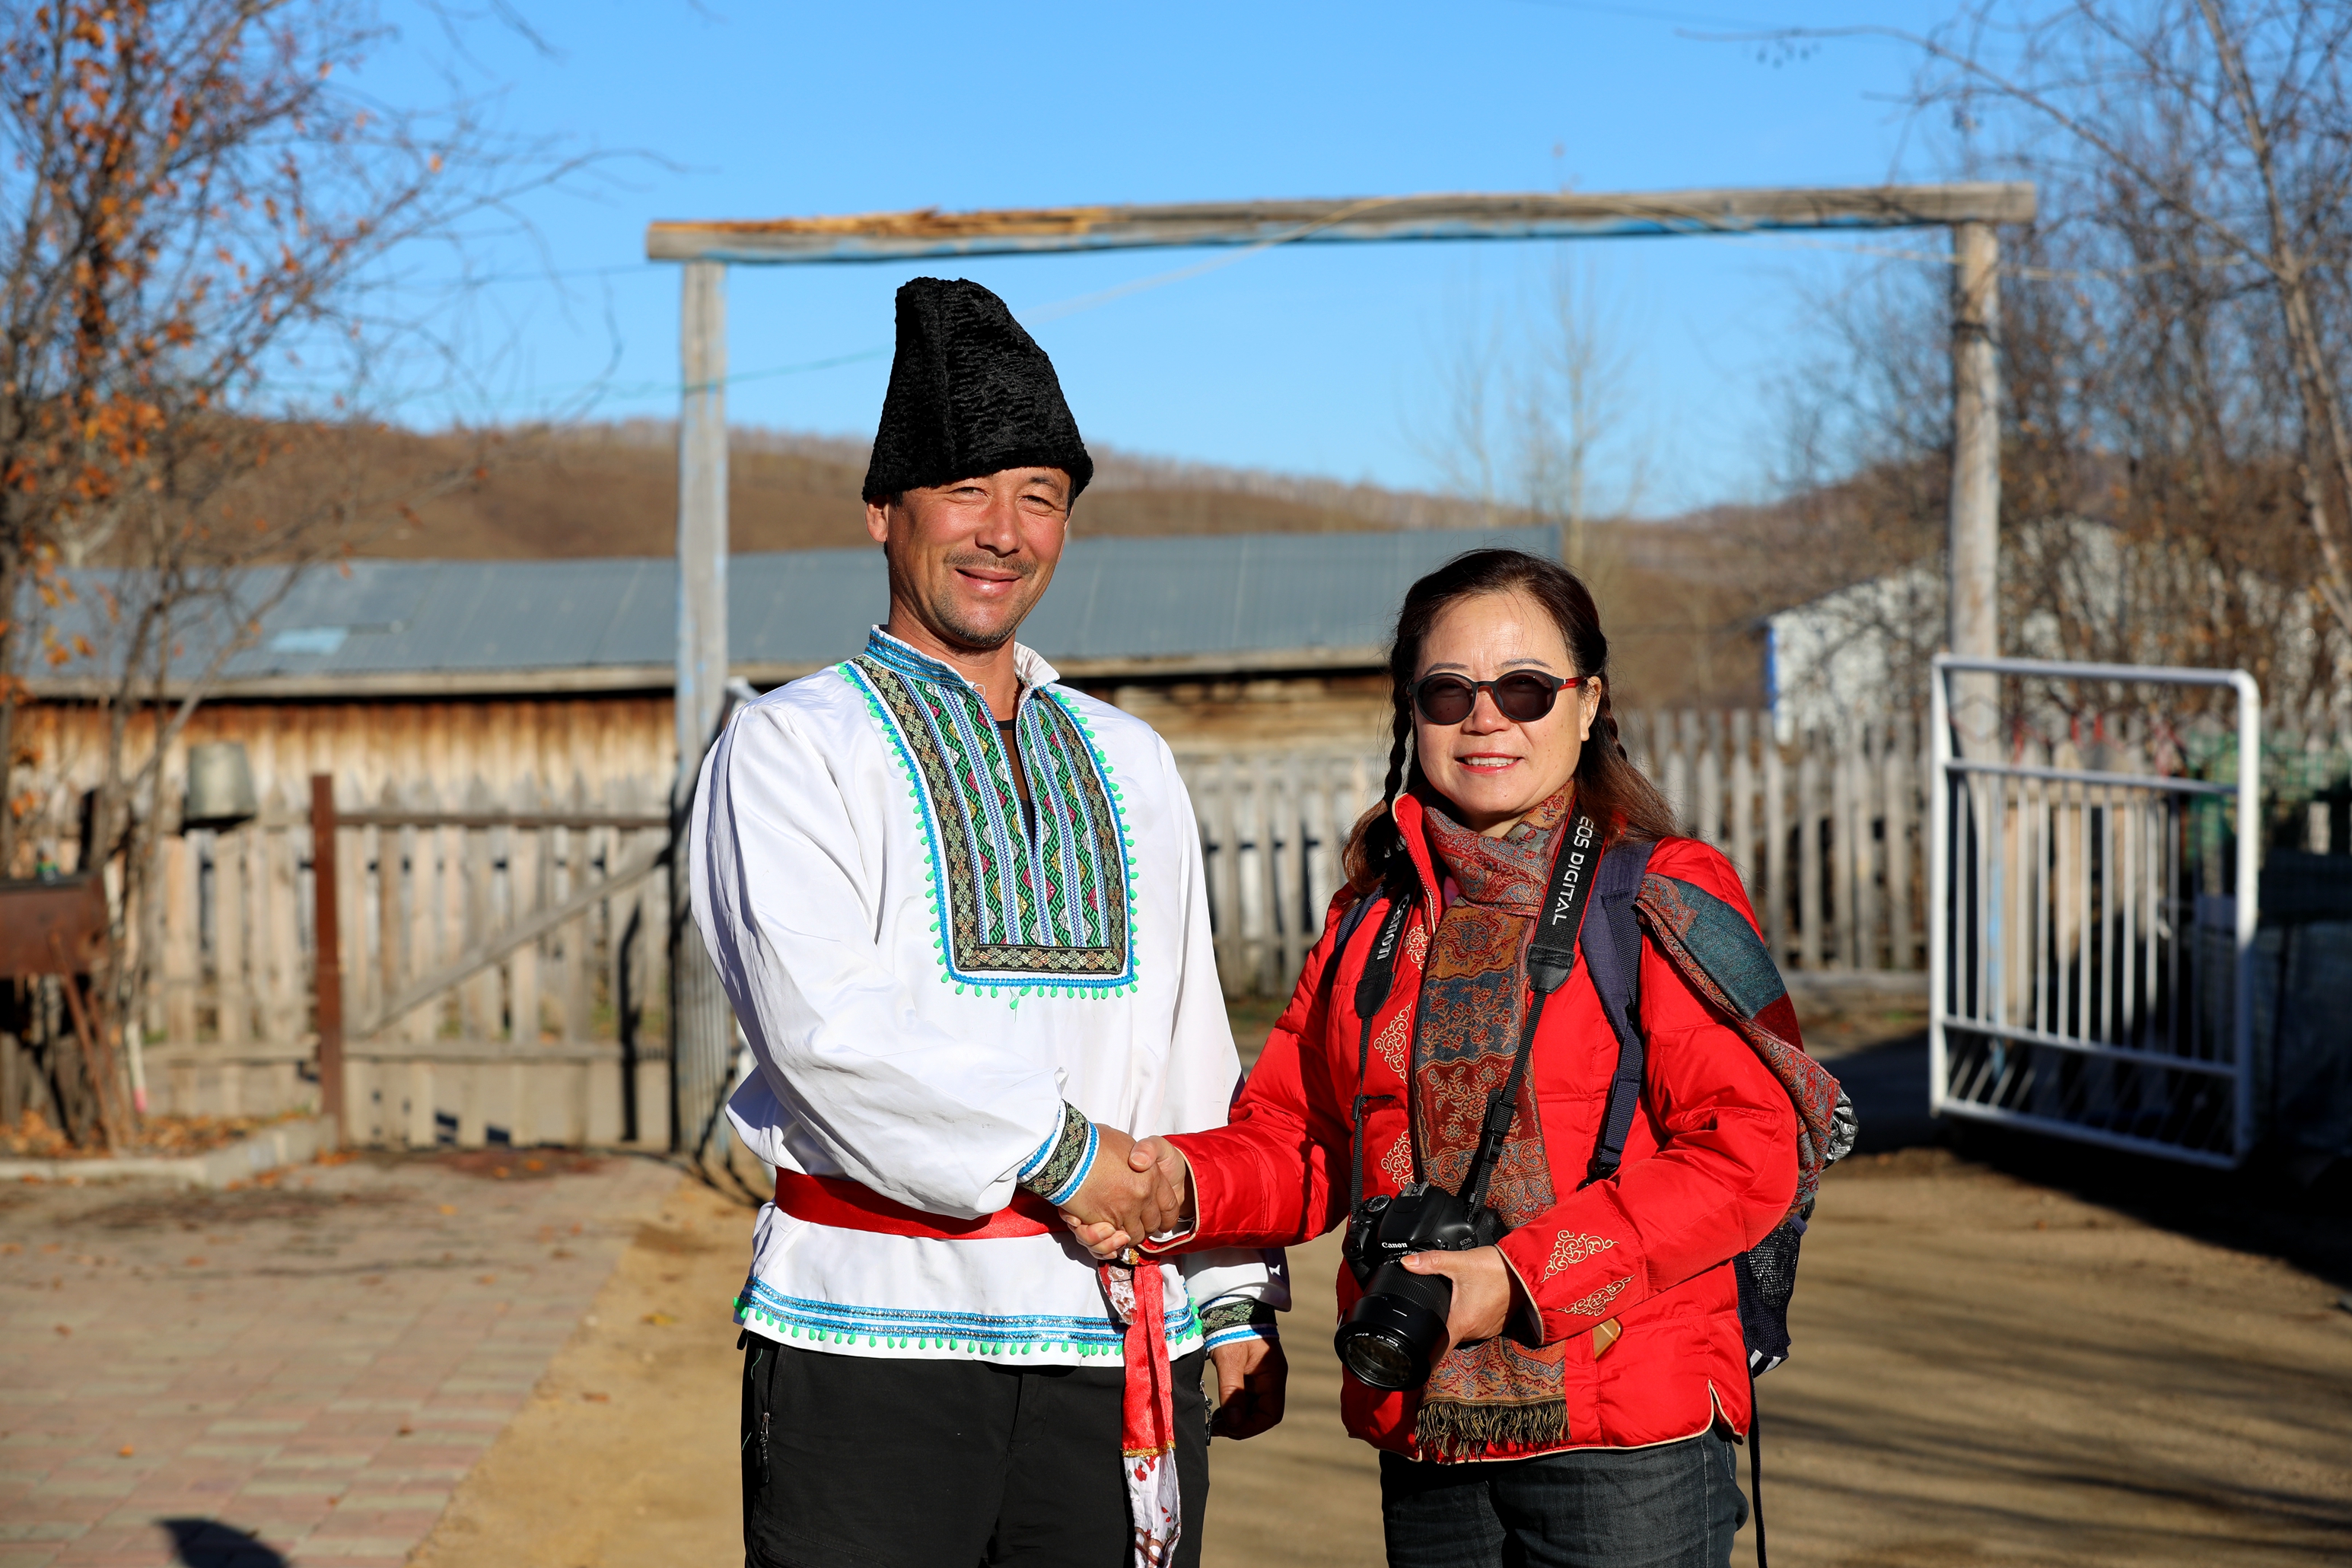 新疆俄罗斯族照片图片